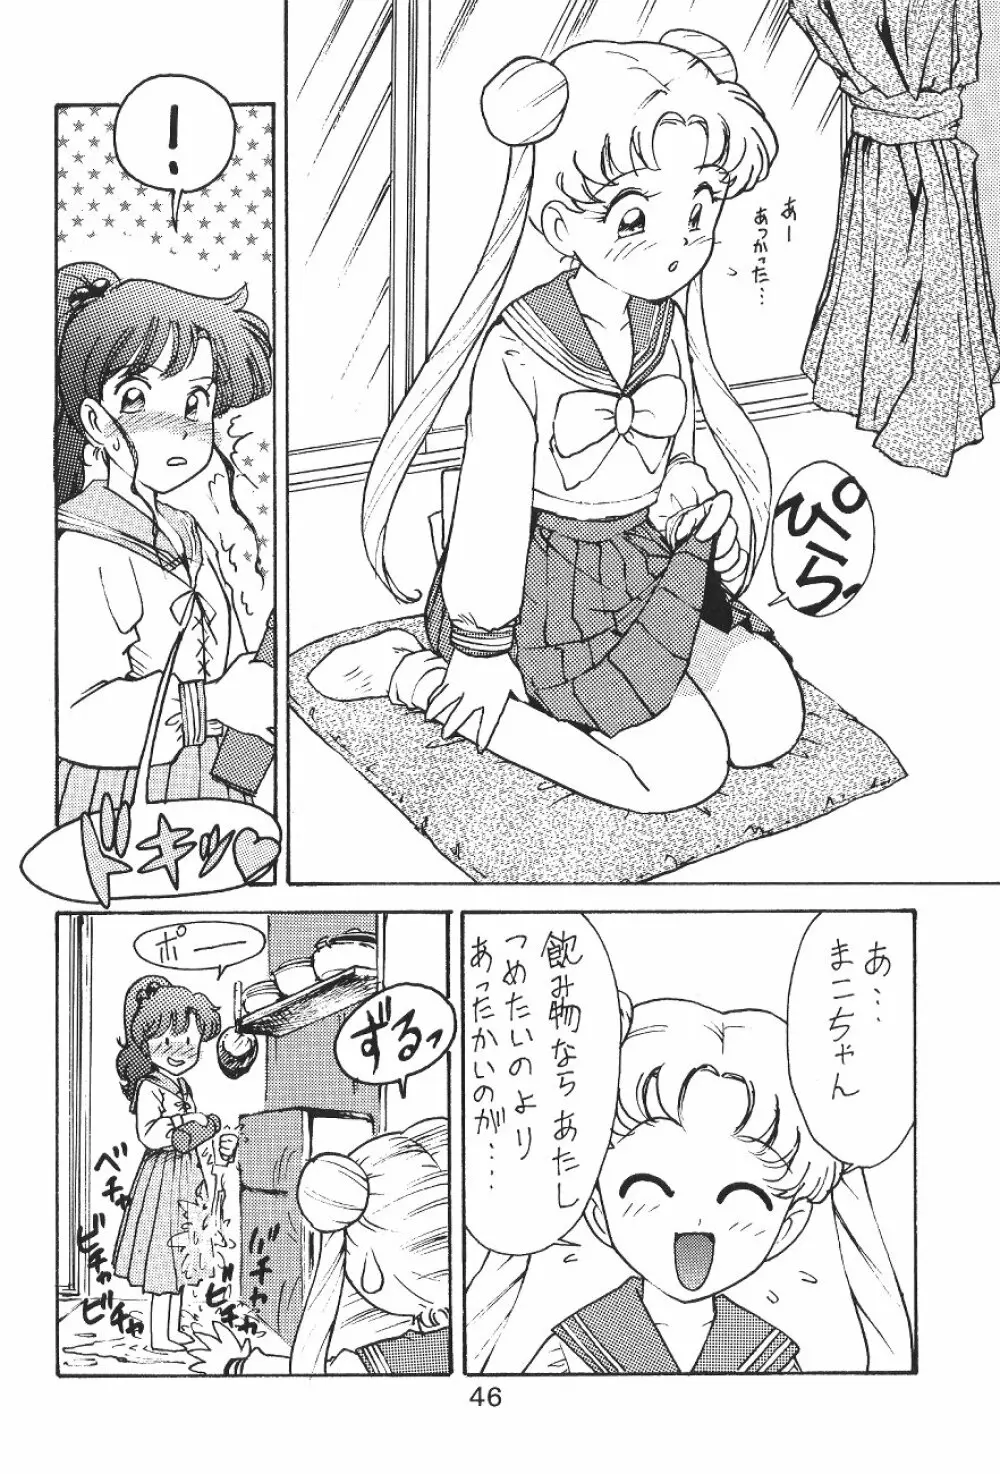 KATZE 7 上巻 - page46